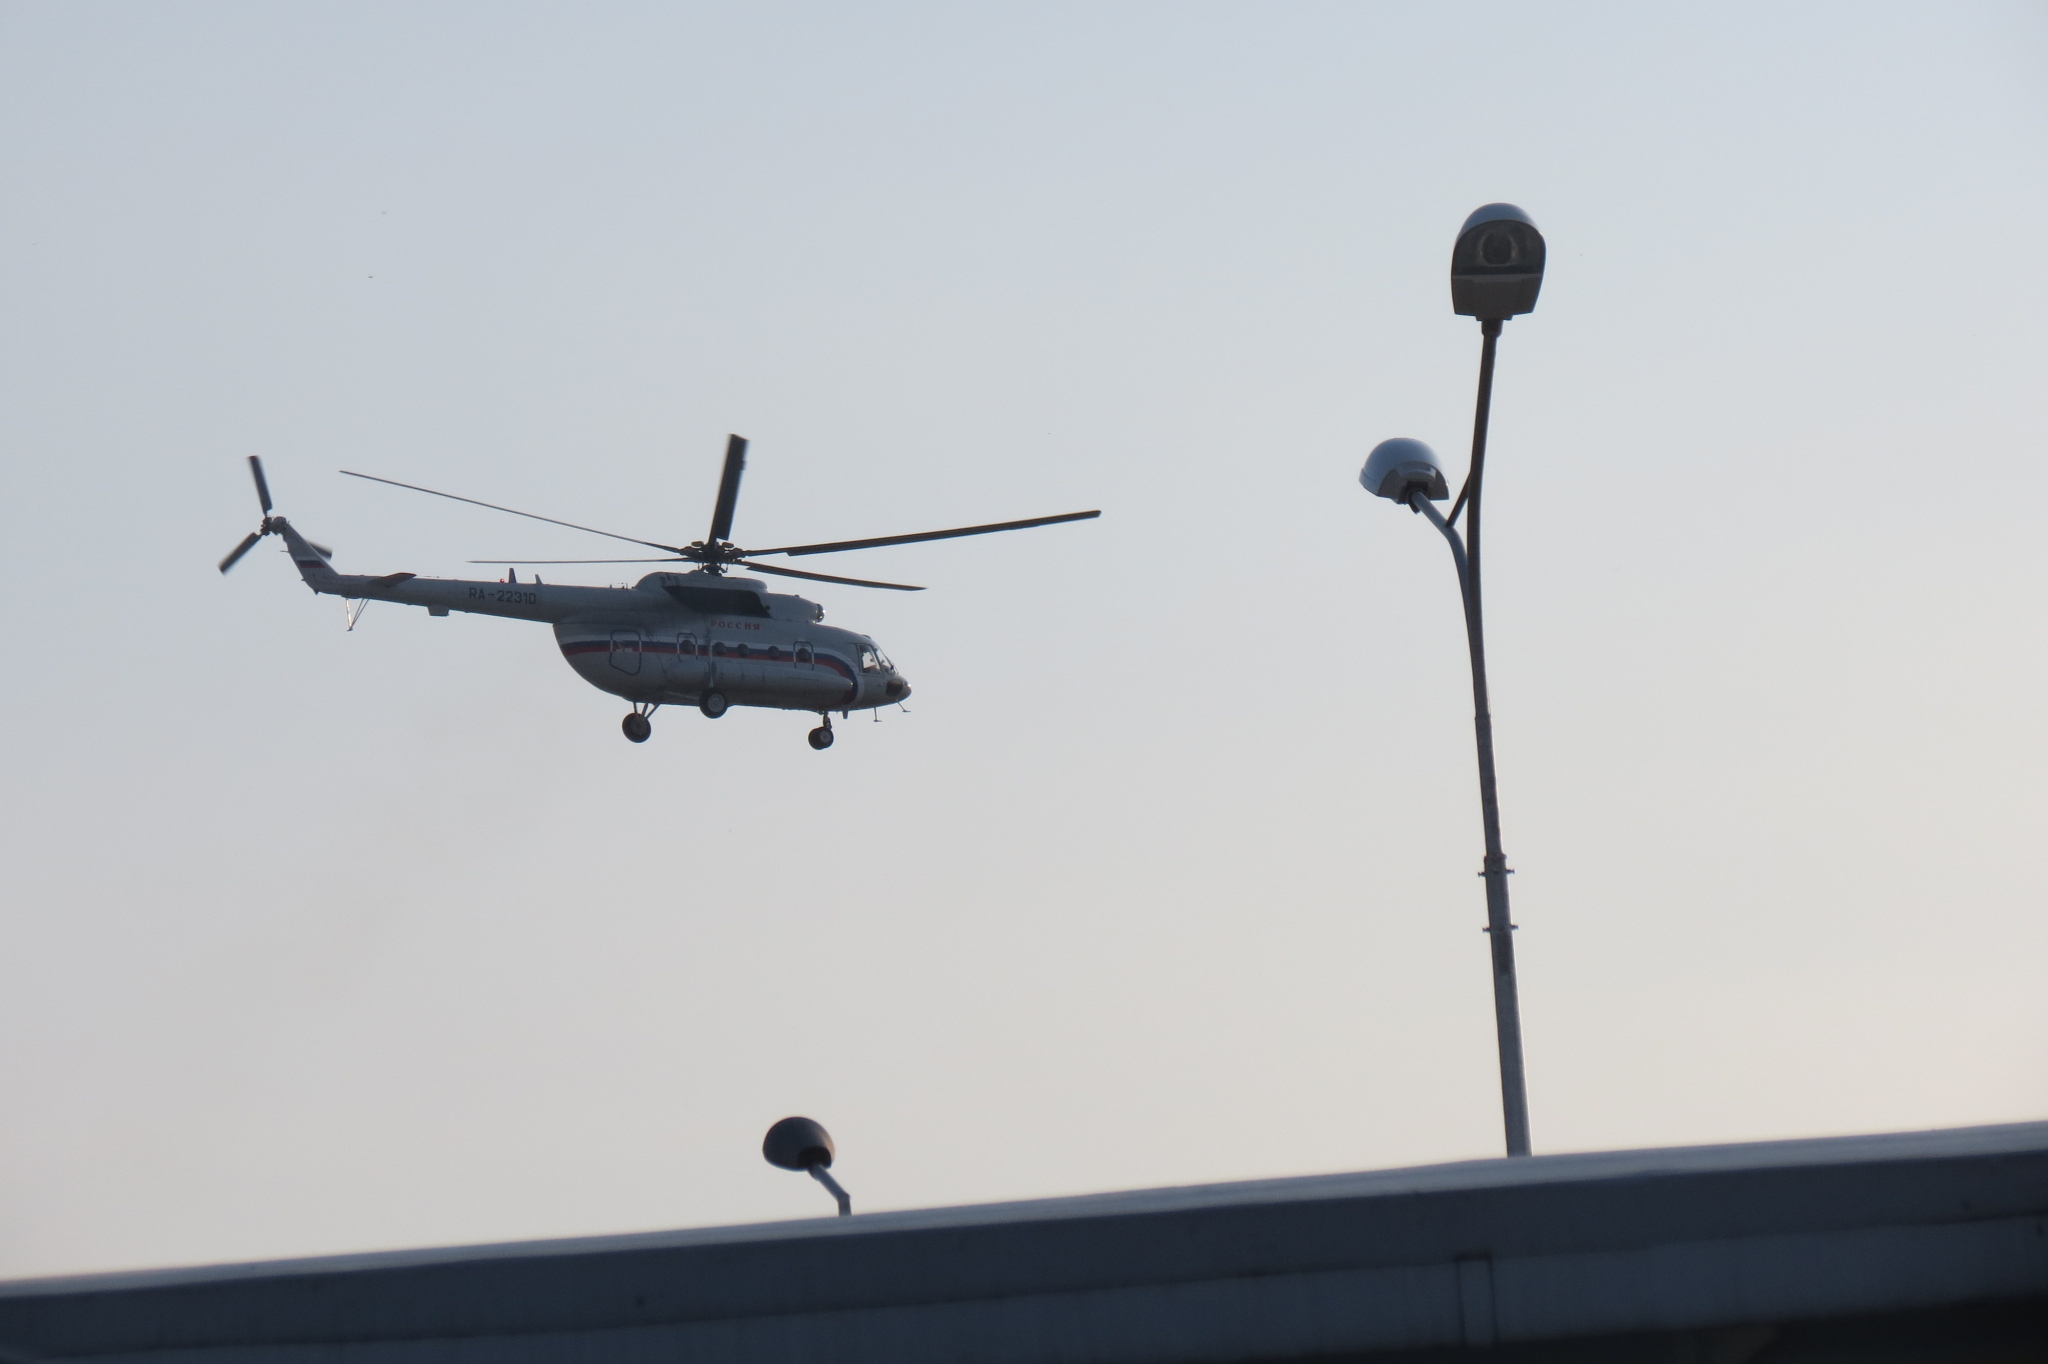 Вице-губернатора Нижегородской области могут отстранить от должности из-за вертолета